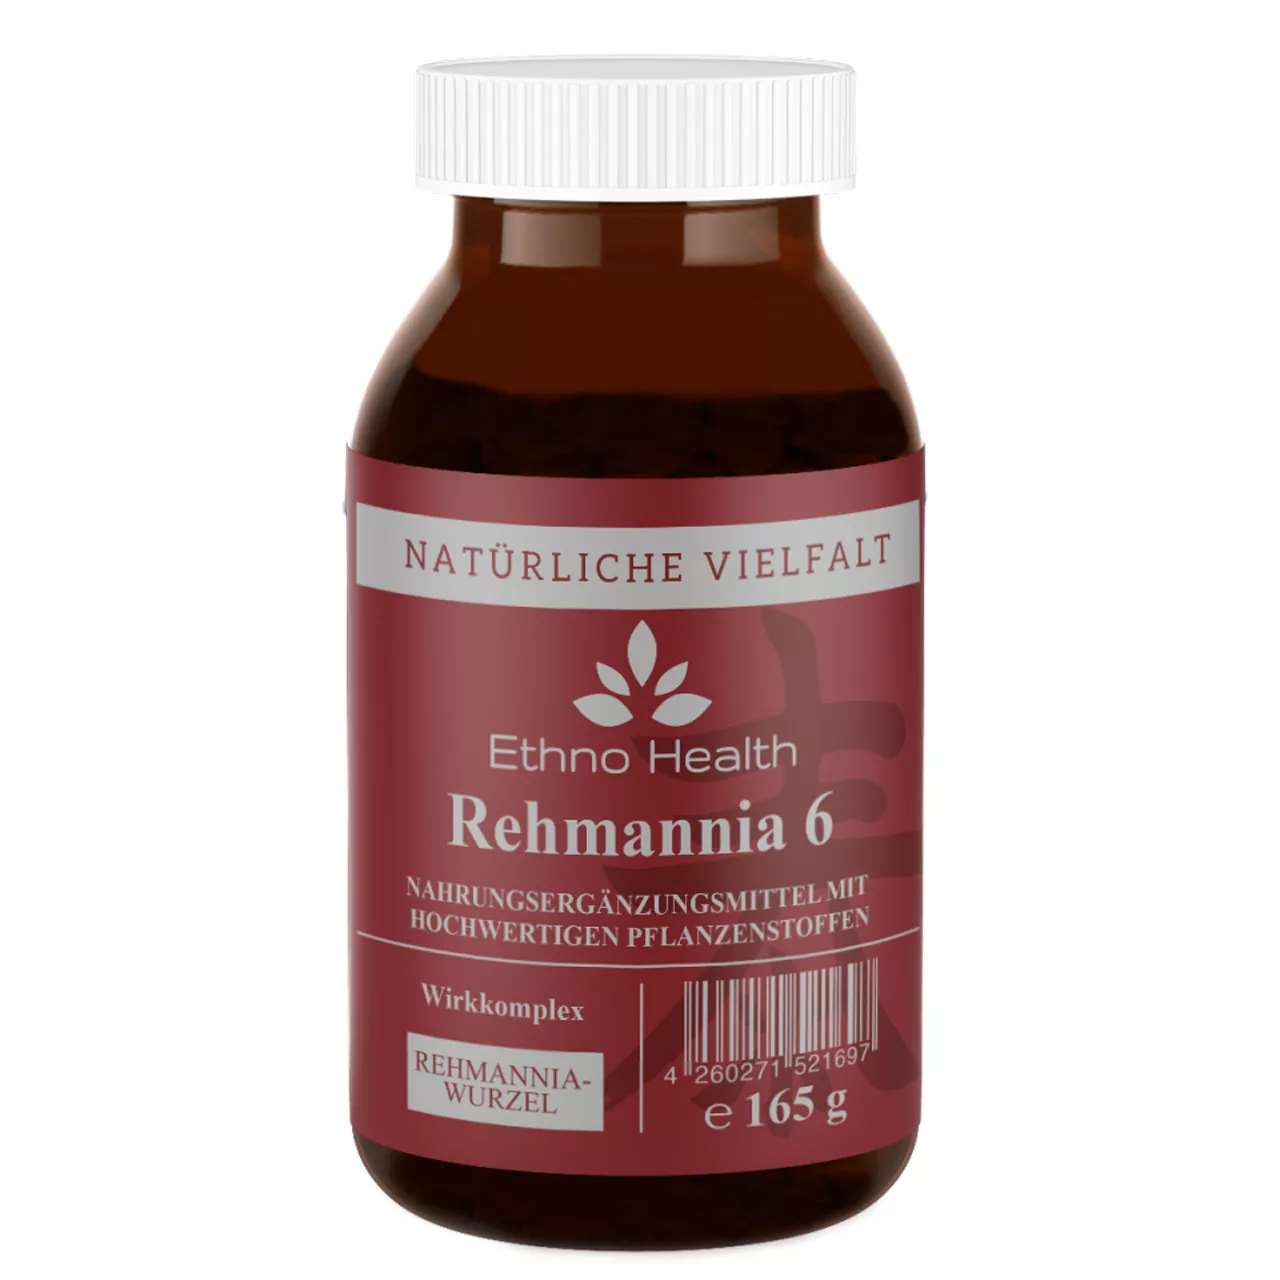 Rehmannia 6 Pulver von Ethno Health beinhaltet 165 Gramm